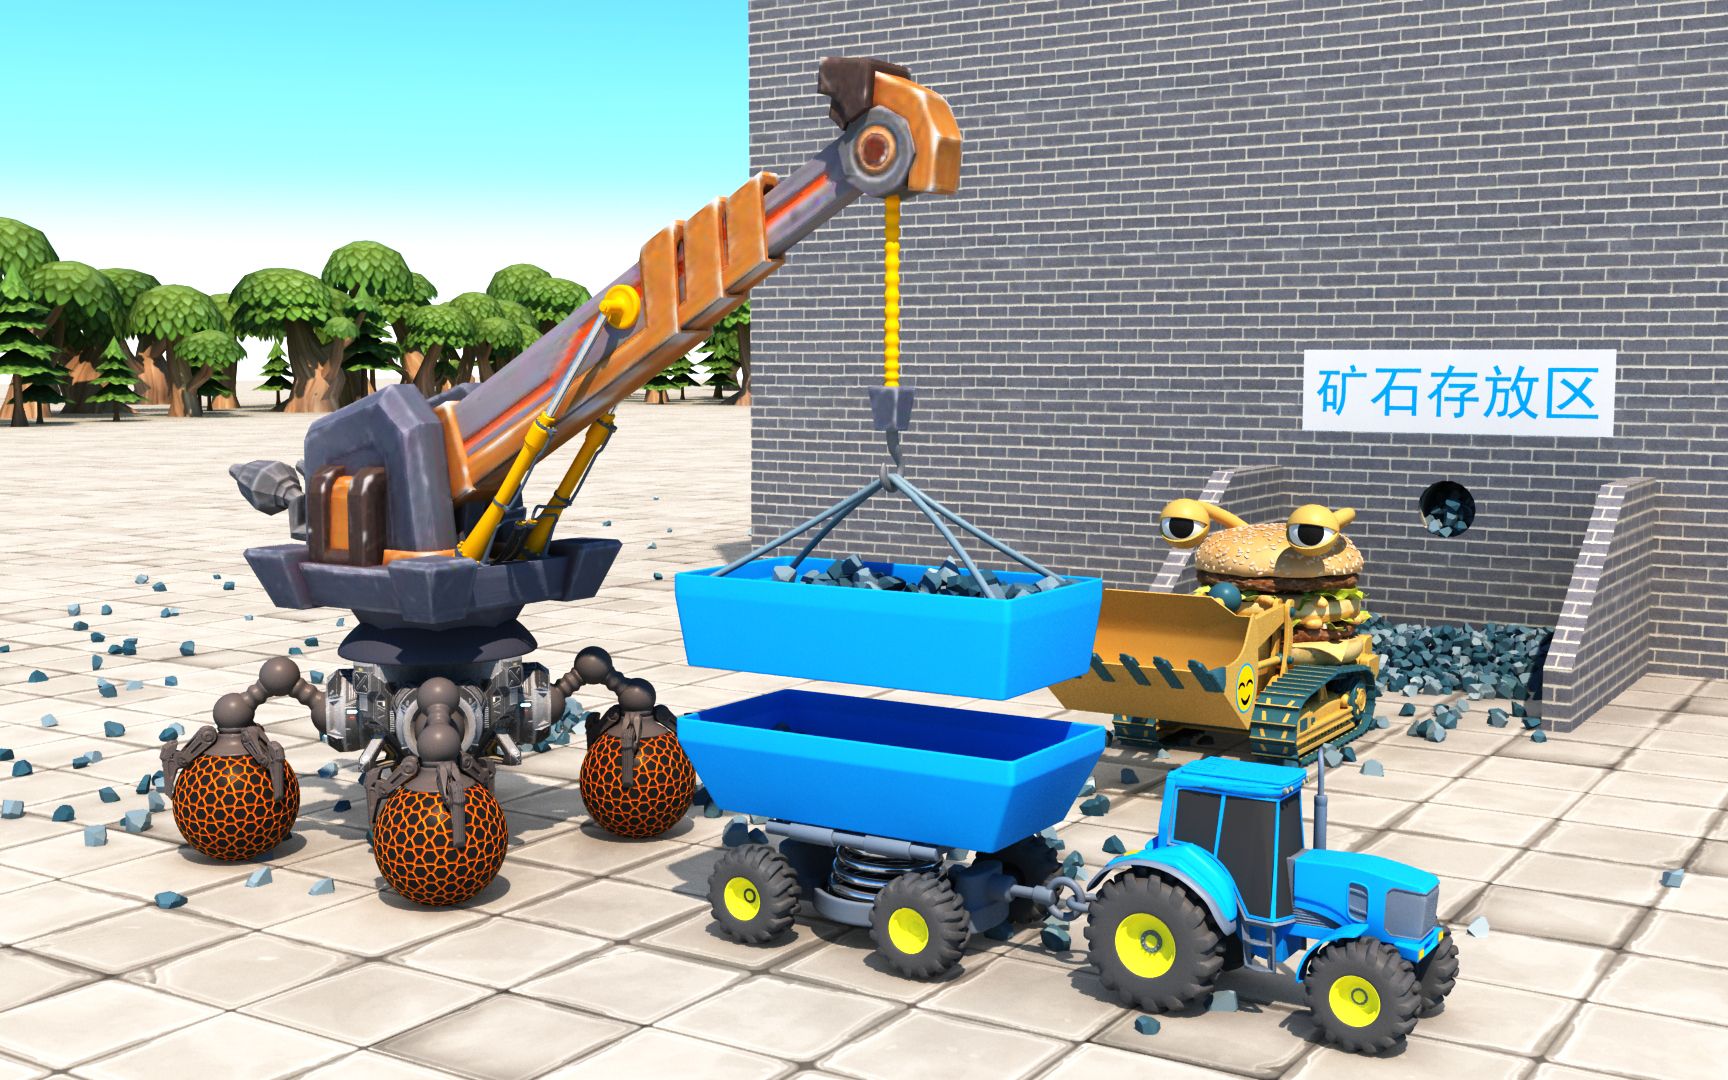 工程车动画：挖掘机、搅拌车和运输车来建造摩天轮-玩乐剧场-玩乐剧场-哔哩哔哩视频